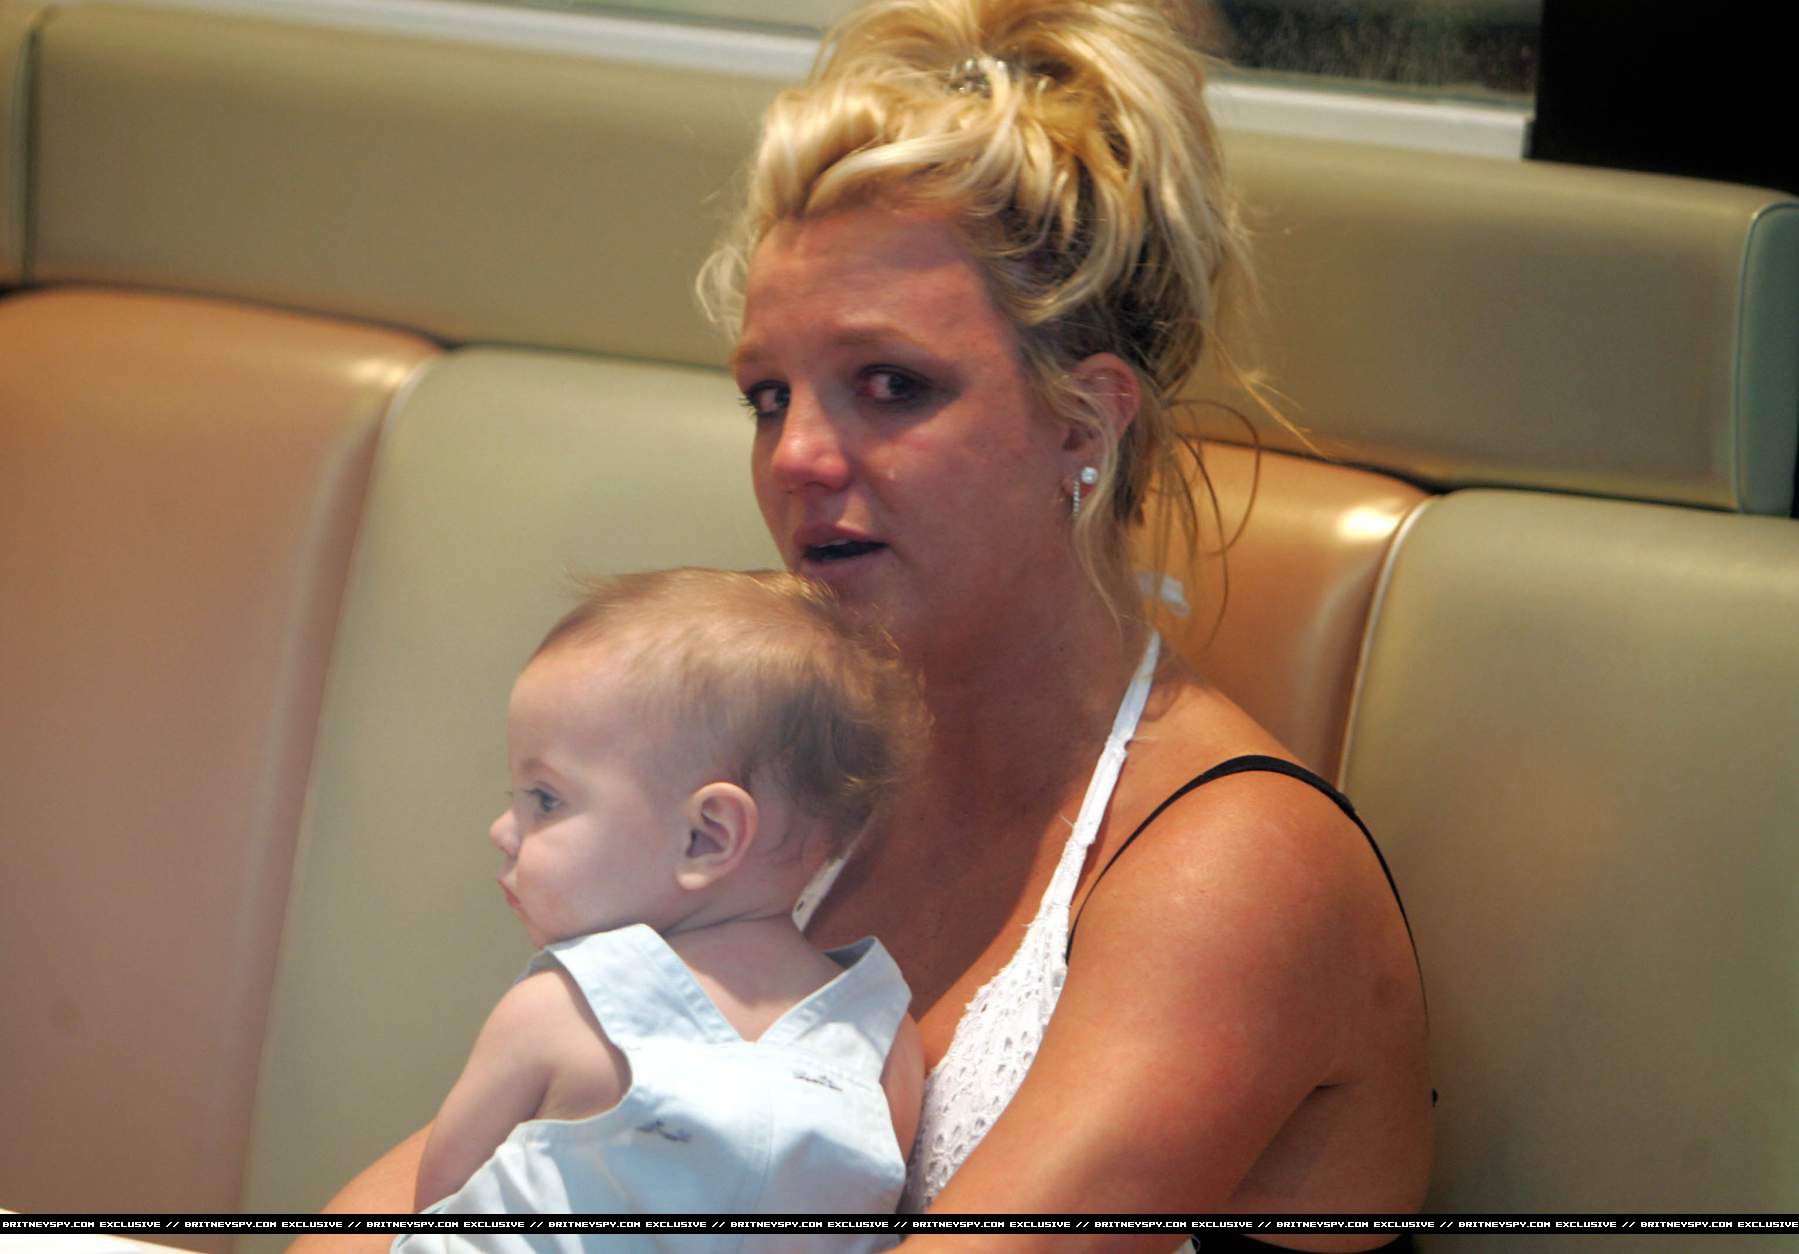 Cha Britney Spears phạm pháp khi cấm con gái mang thai? - Ảnh 3.